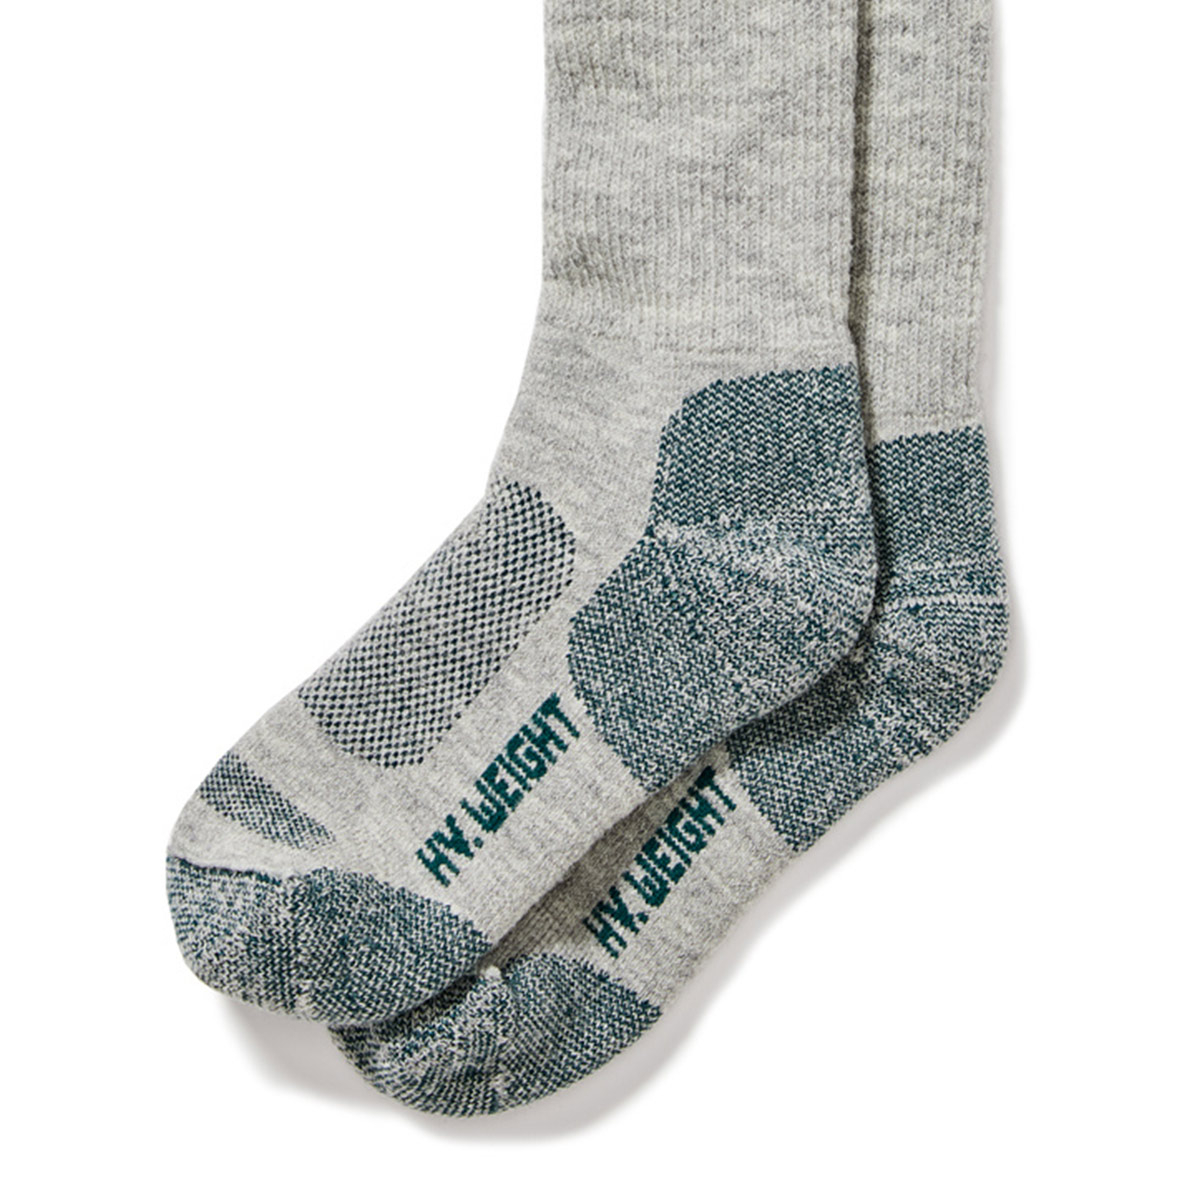 Filson Reliable Boot Sock Gray zijn ontworpen voor koude weersomstandigheden